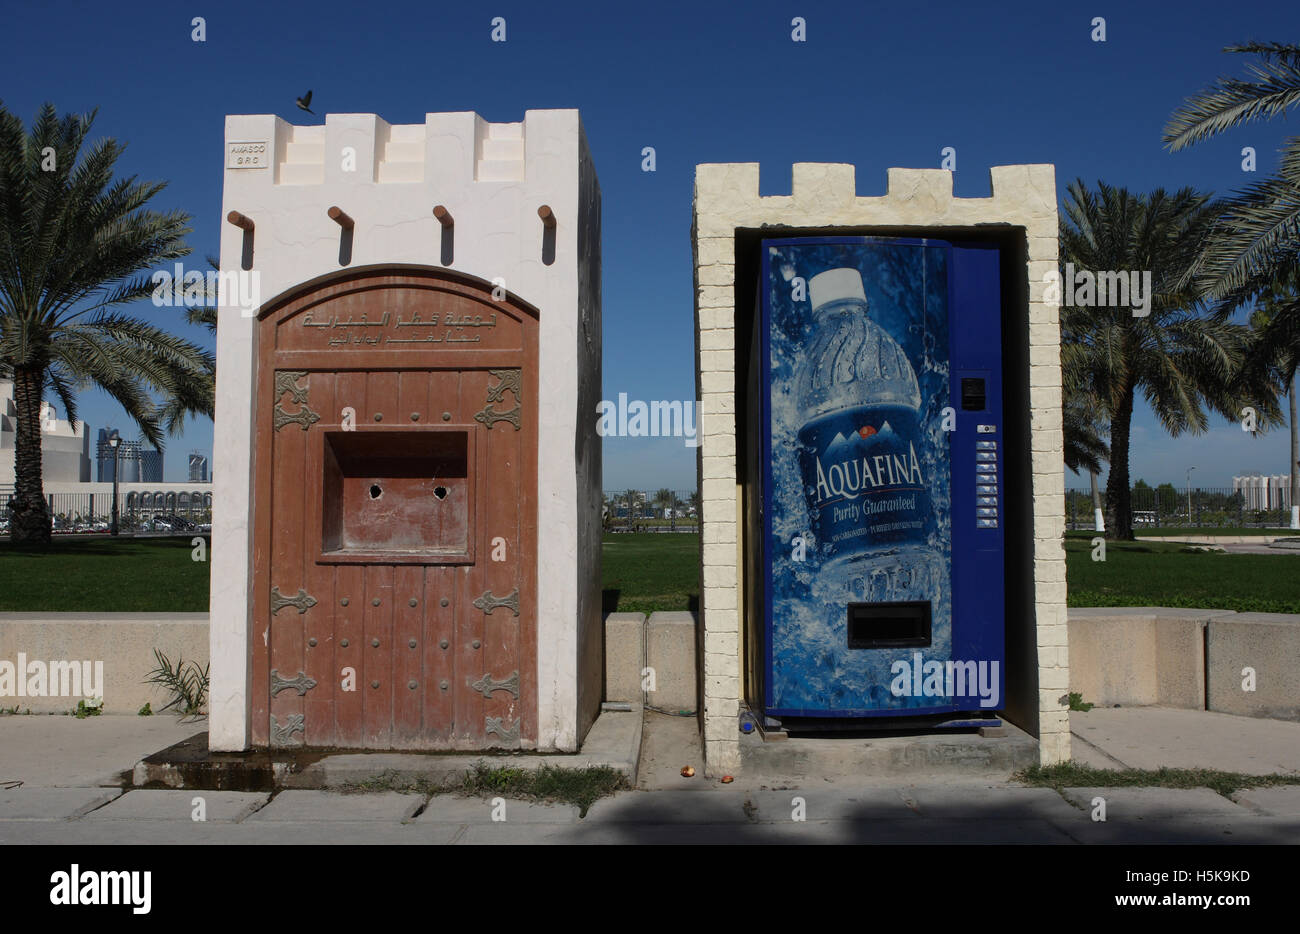 Un vieux, pas d'eau potable fonctionne à côté d'un distributeur distributeur d'eau minérale moderne, Doha, Qatar, Moyen-Orient Banque D'Images